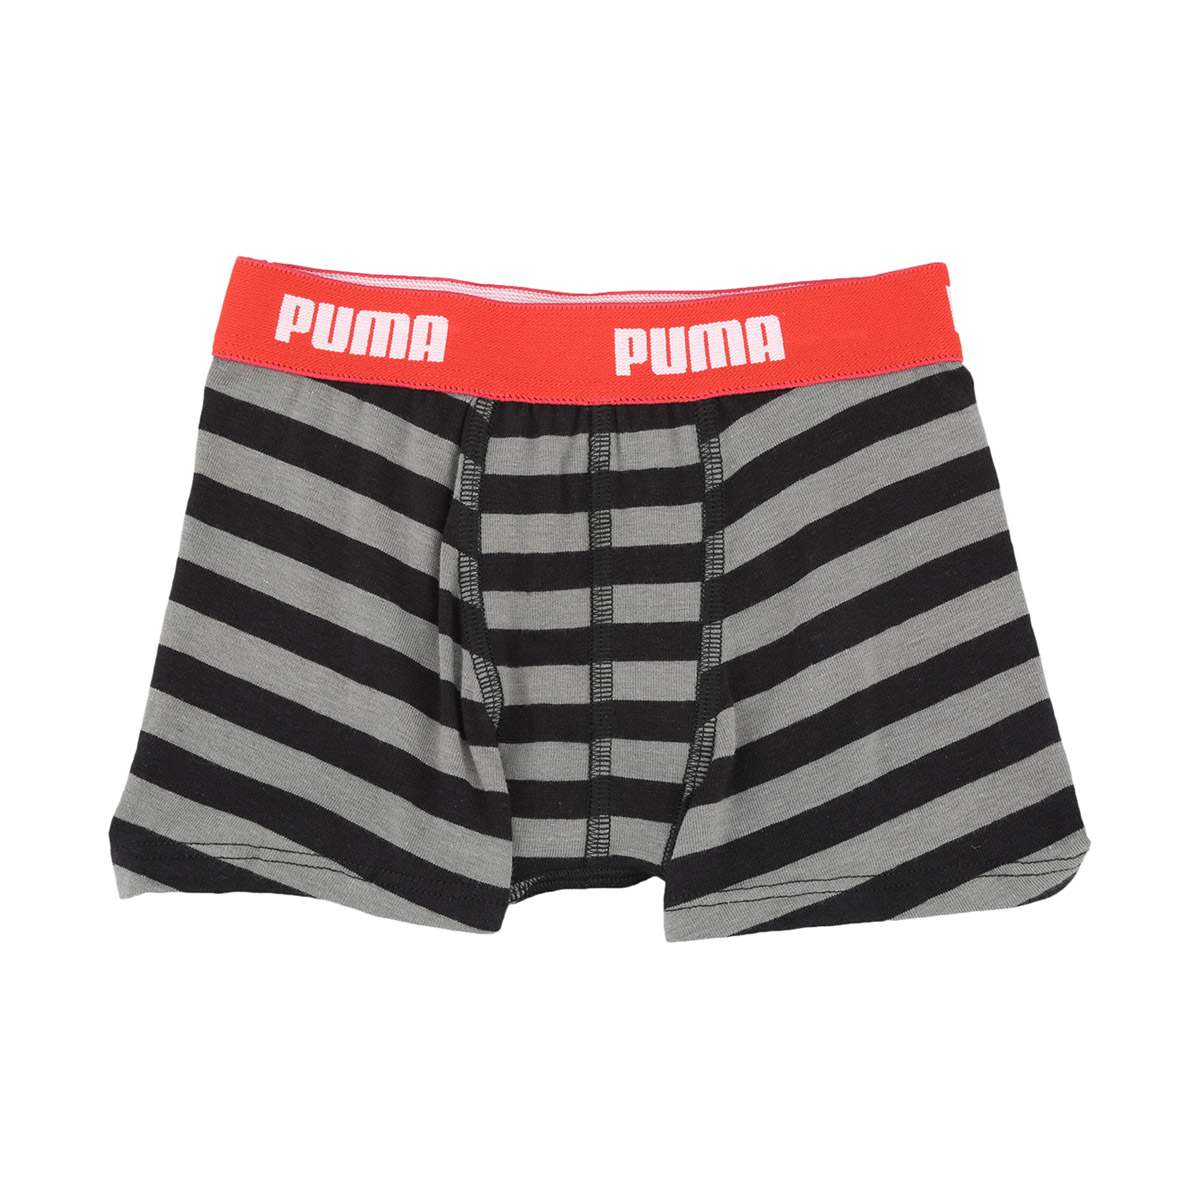 Boxer Puma Stripe de Hombre - Sporting